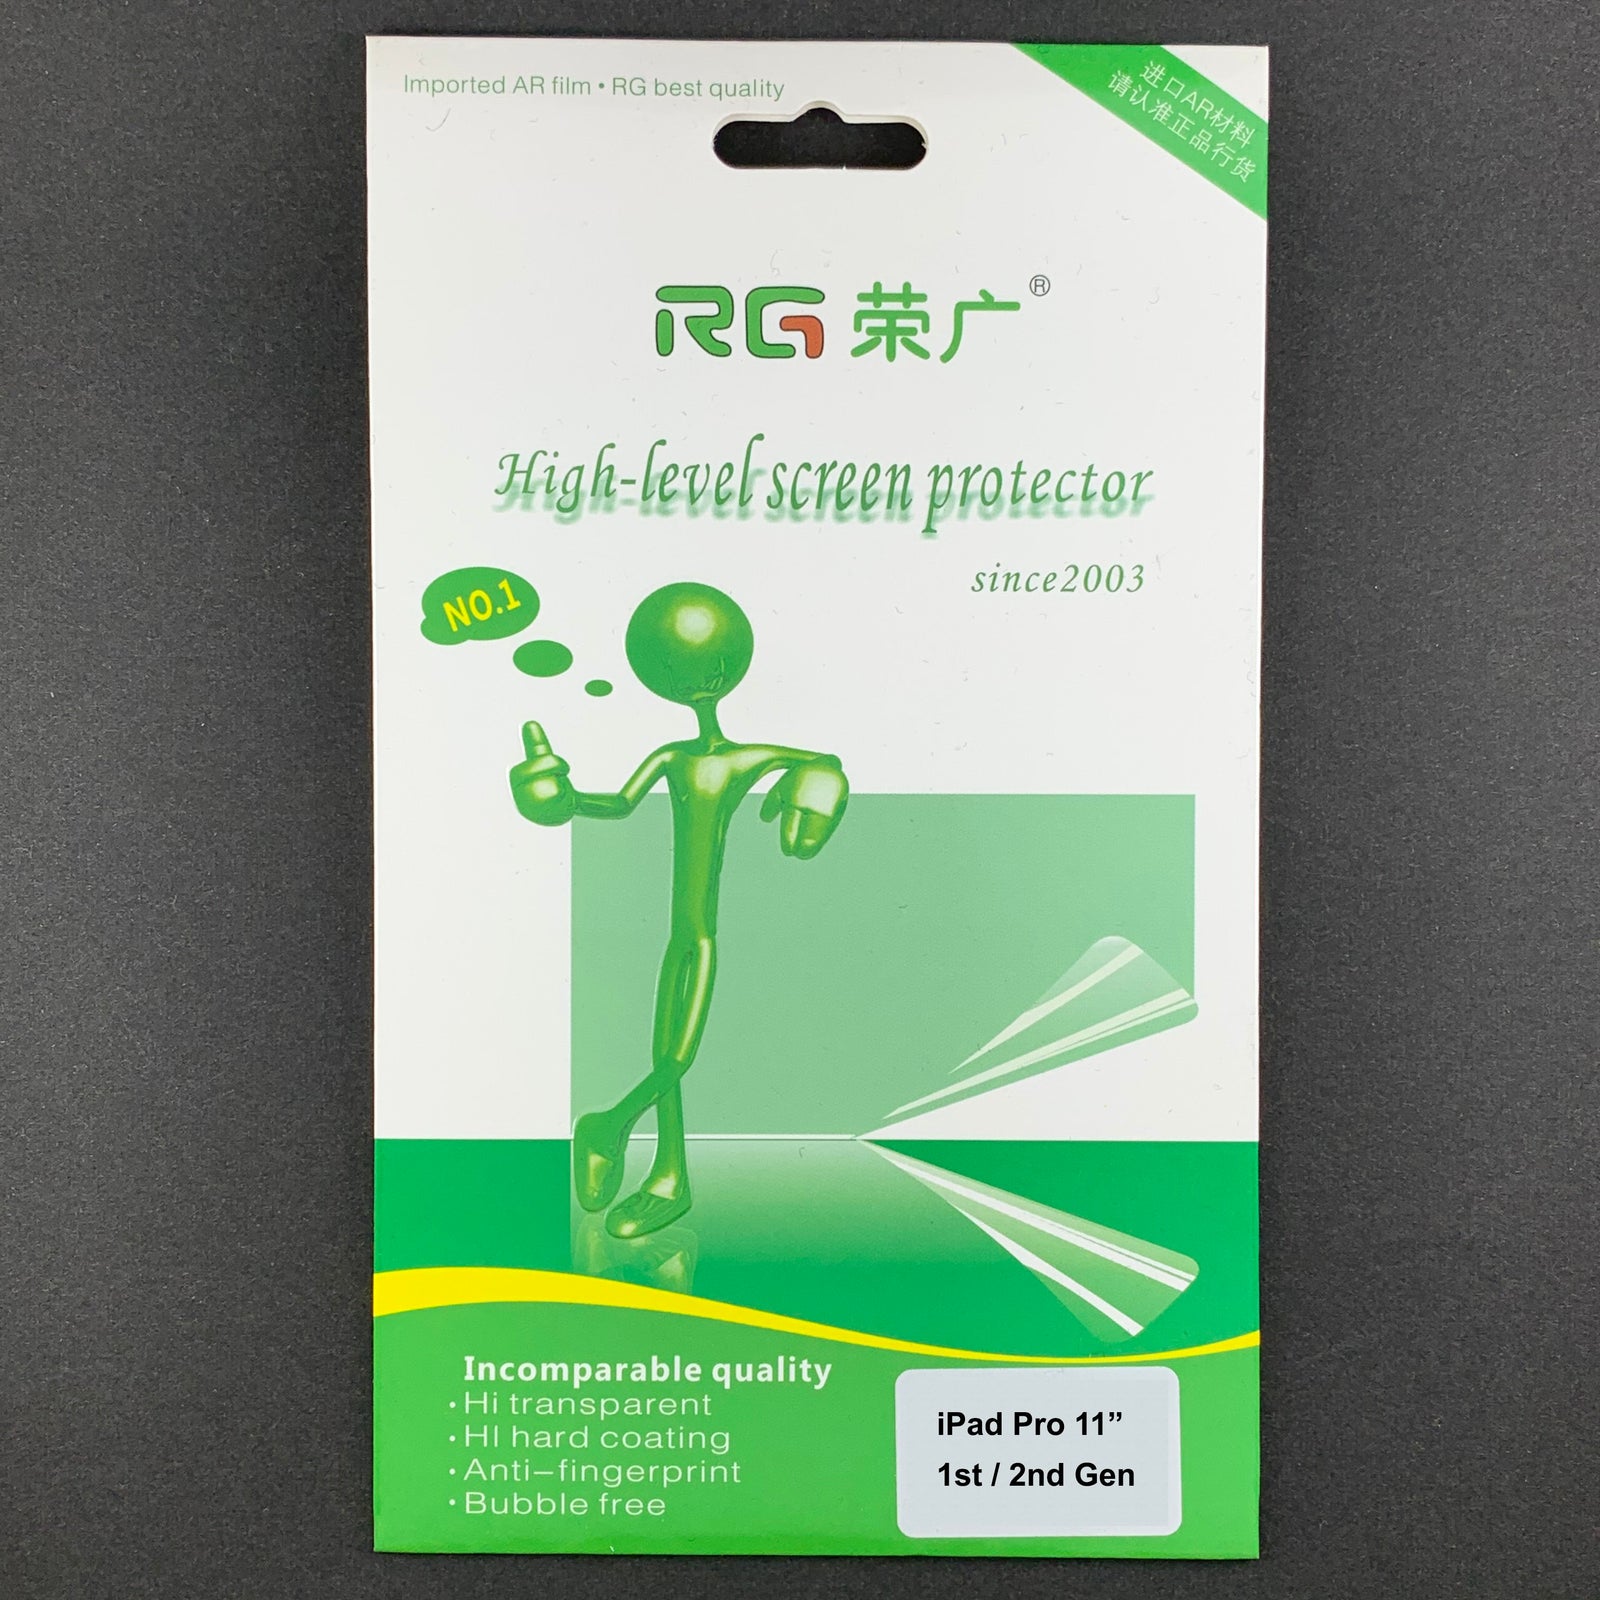 Protecteur d'écran RG Professional Soft Film pour iPad Pro 11" 1ère / 2ème génération (CLEAR, 2-PACK)